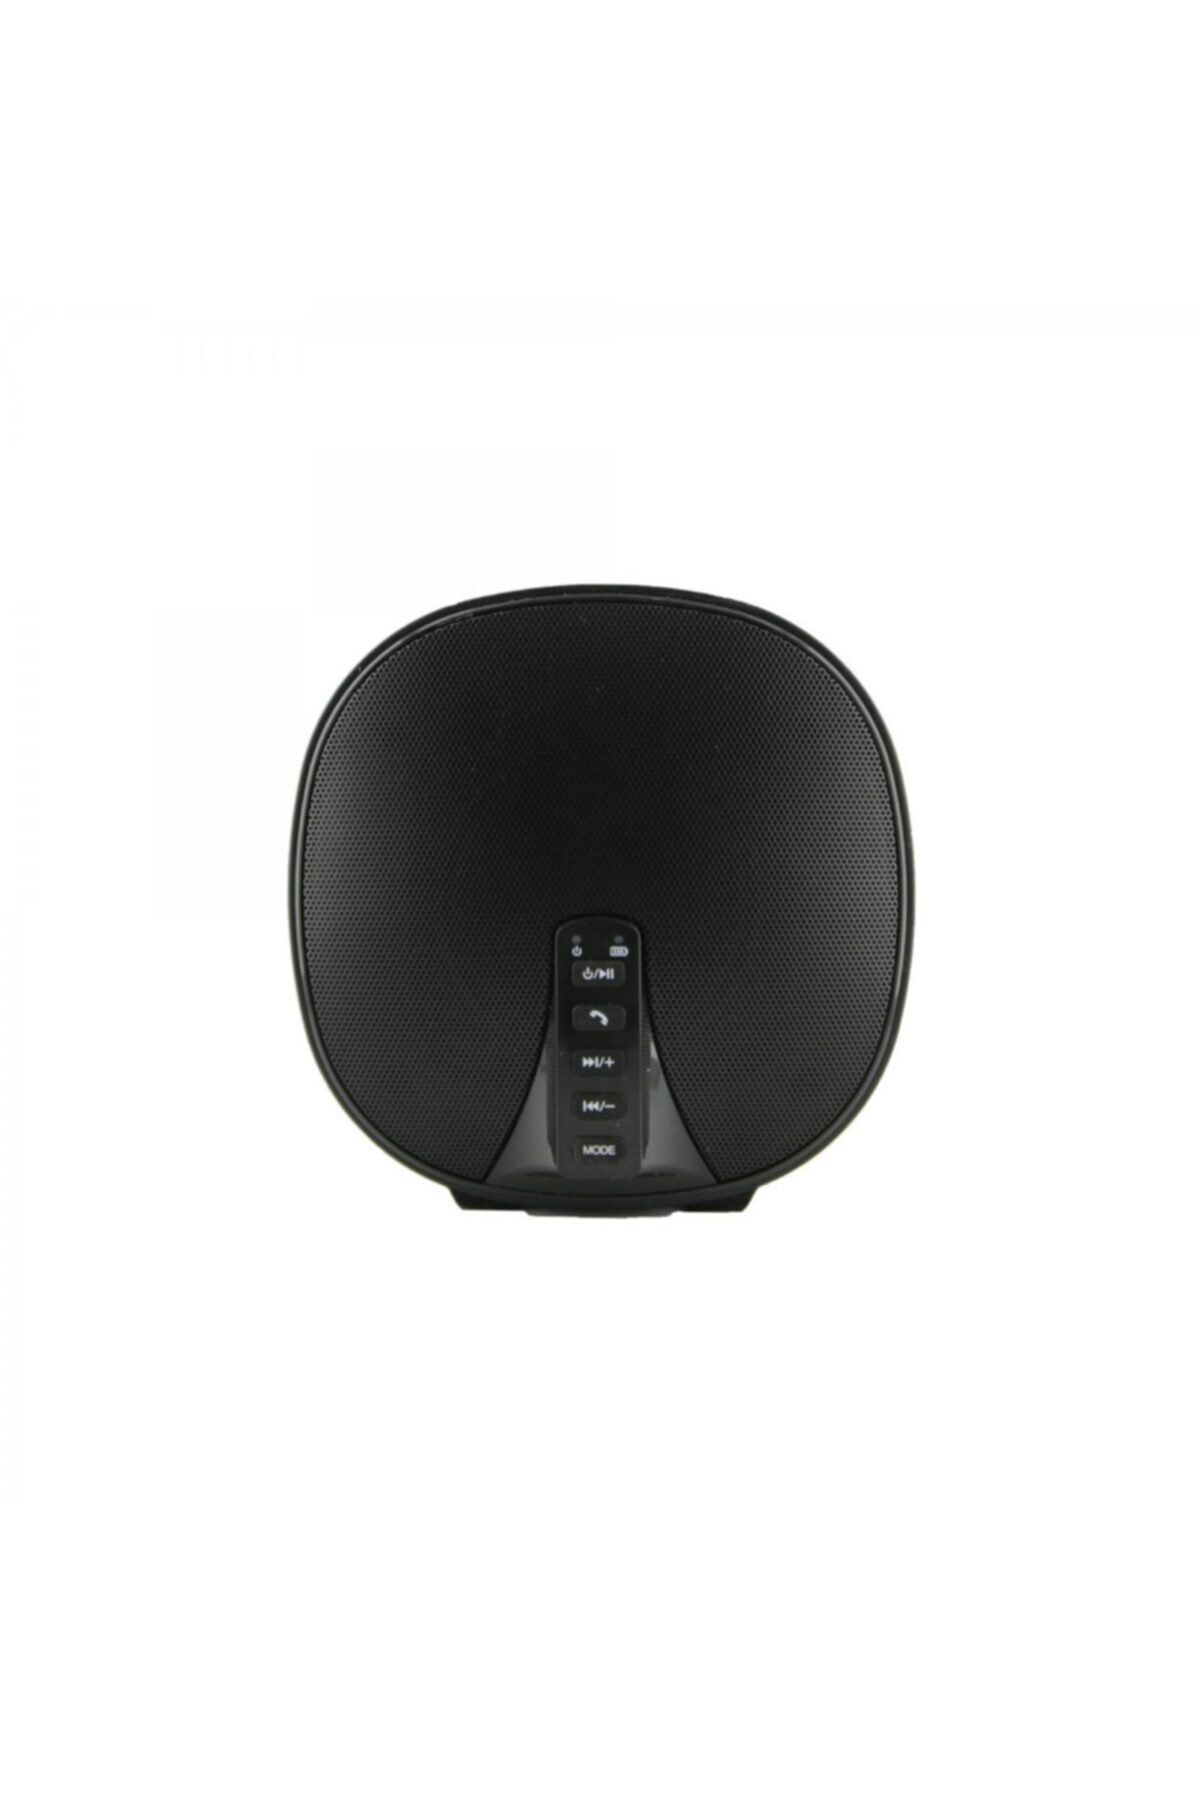 Nettech Nt-bts01 Nt-31060 Stereo Bluetooth Speaker